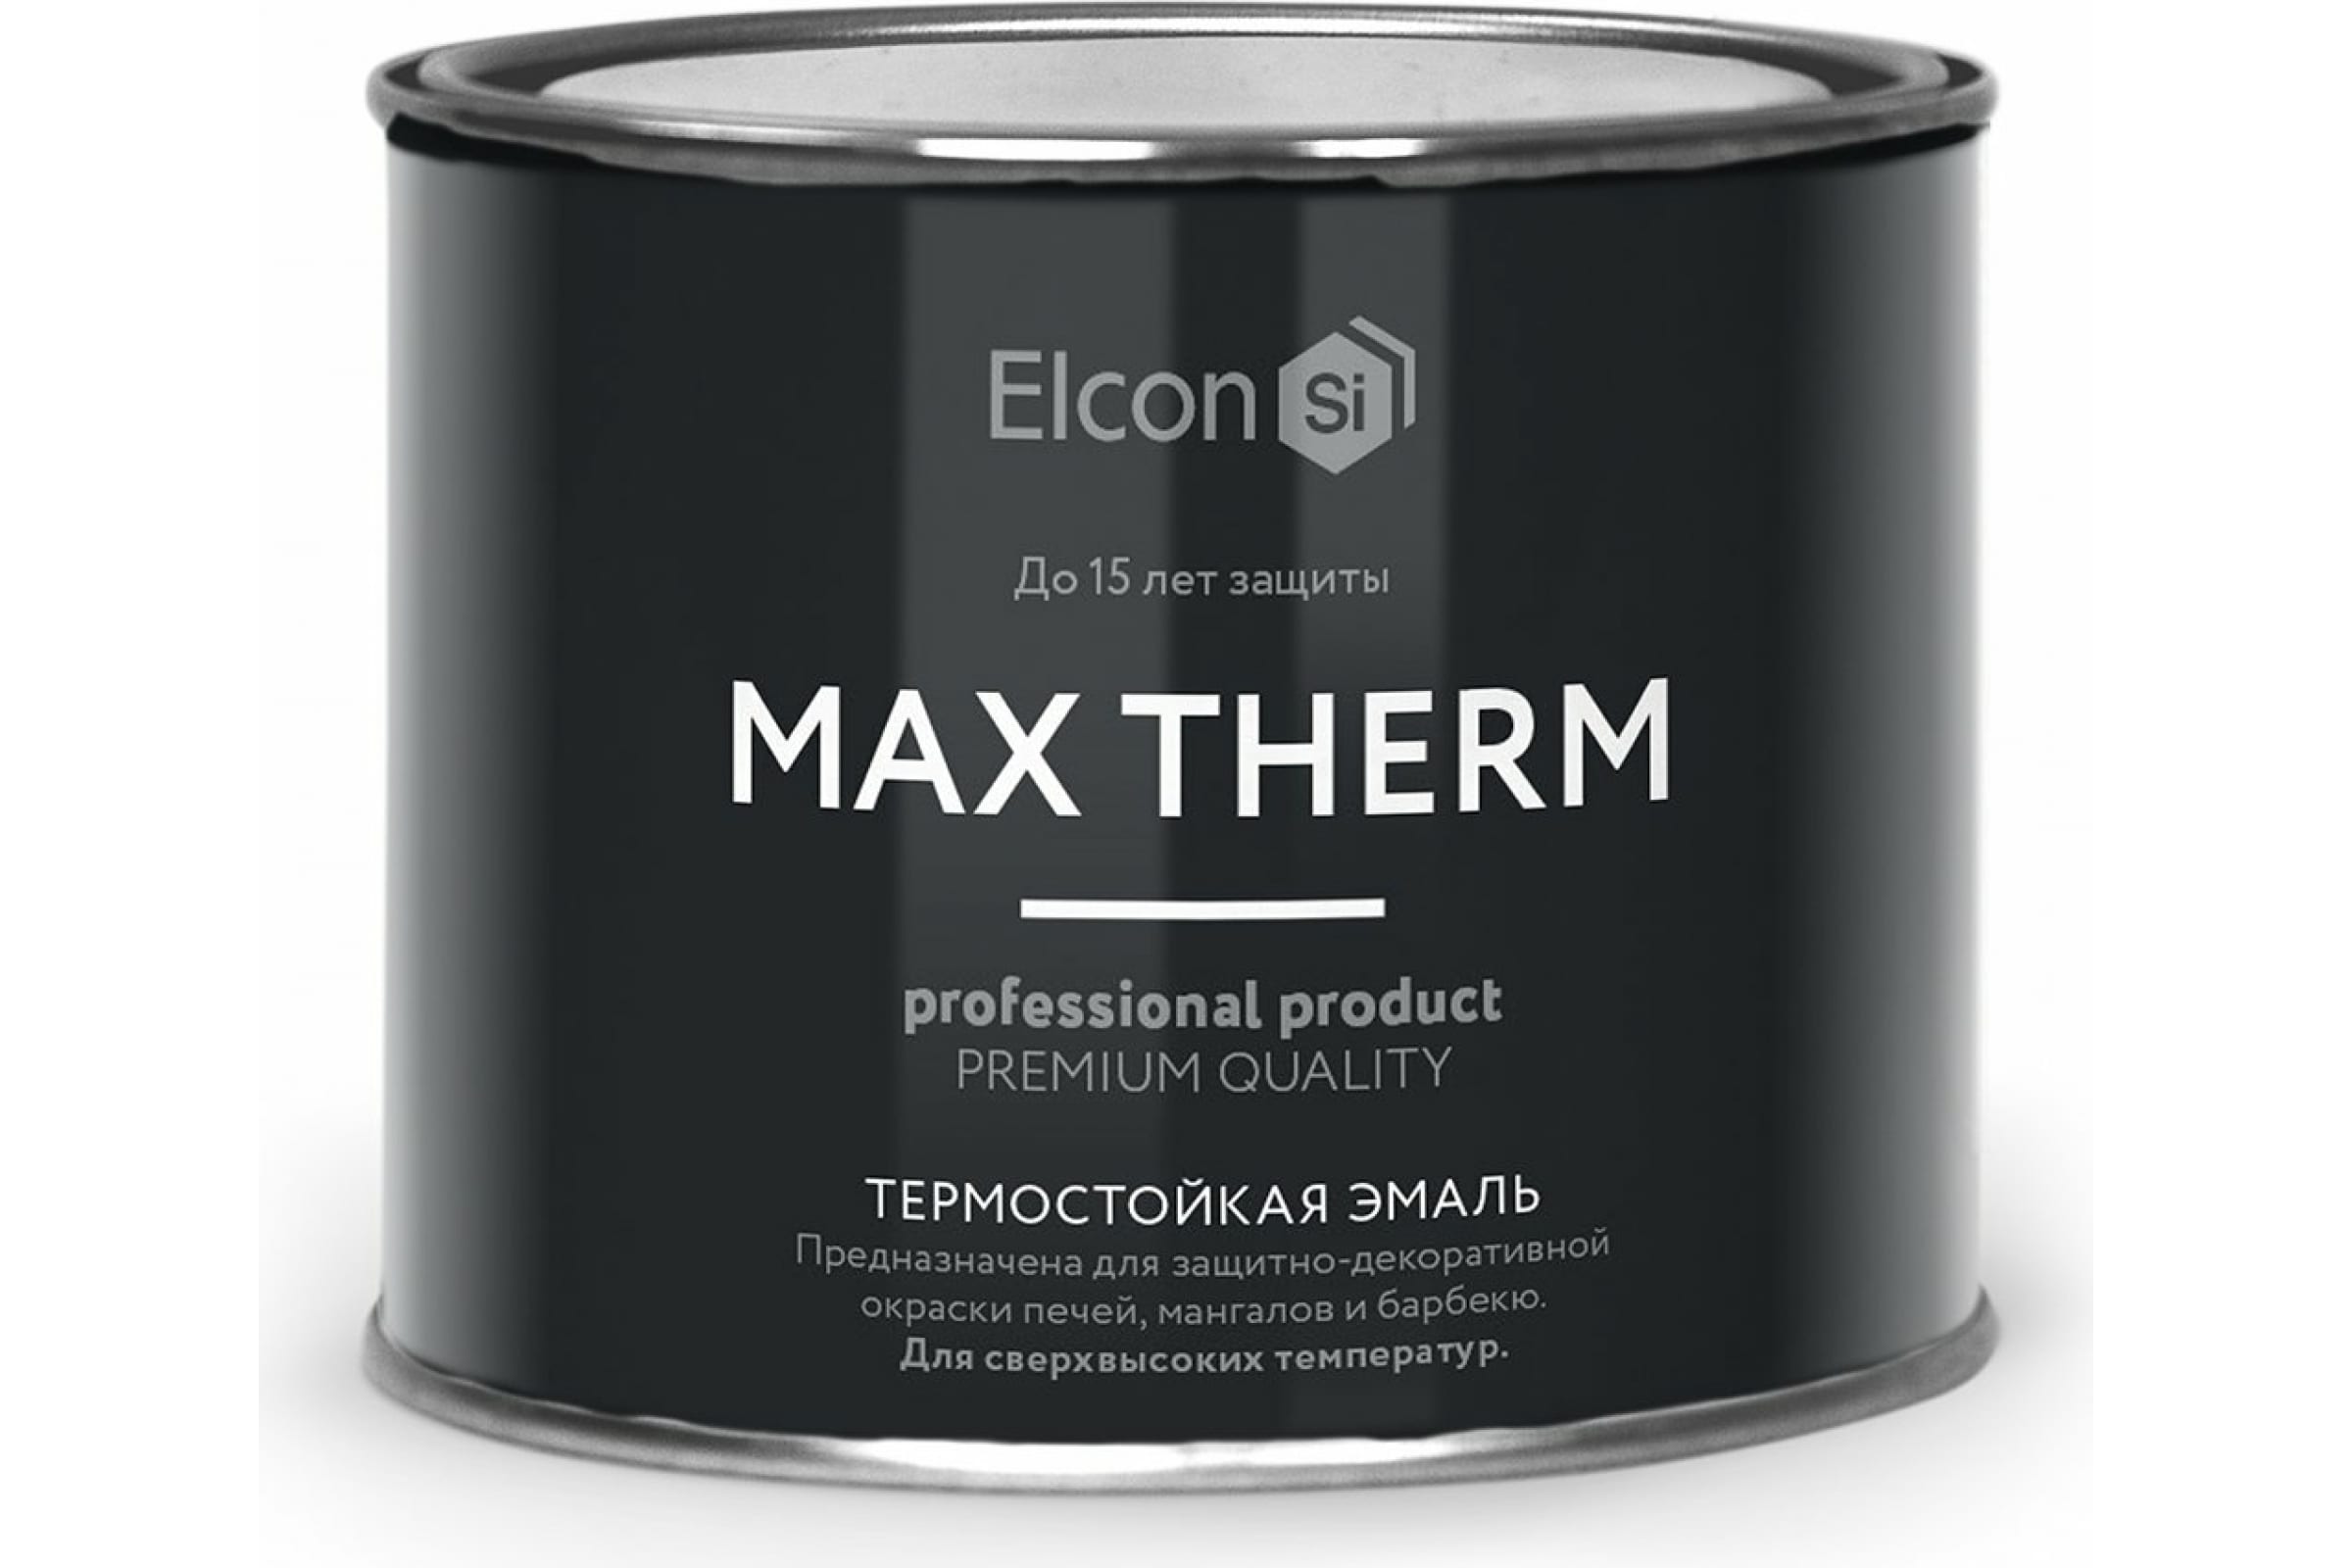 Термостойкая антикоррозионная эмаль Elcon Max Therm до 400 градусов, 0,4 л, желтая термостойкая антикоррозионная эмаль elcon max therm до 400 градусов 0 4 л синяя